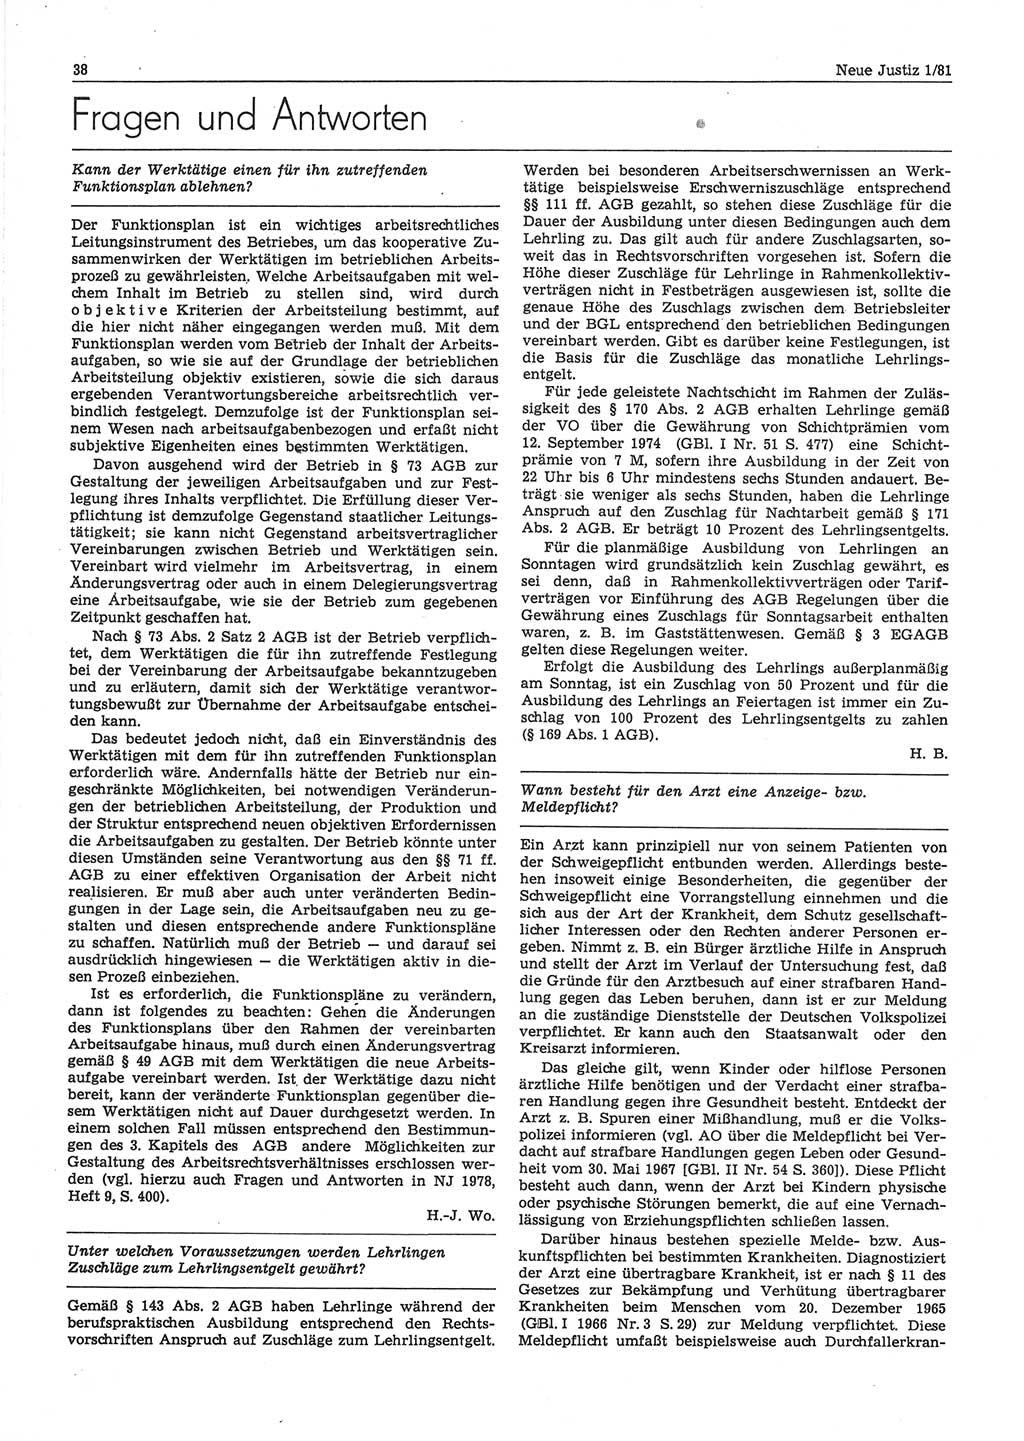 Neue Justiz (NJ), Zeitschrift für sozialistisches Recht und Gesetzlichkeit [Deutsche Demokratische Republik (DDR)], 35. Jahrgang 1981, Seite 38 (NJ DDR 1981, S. 38)